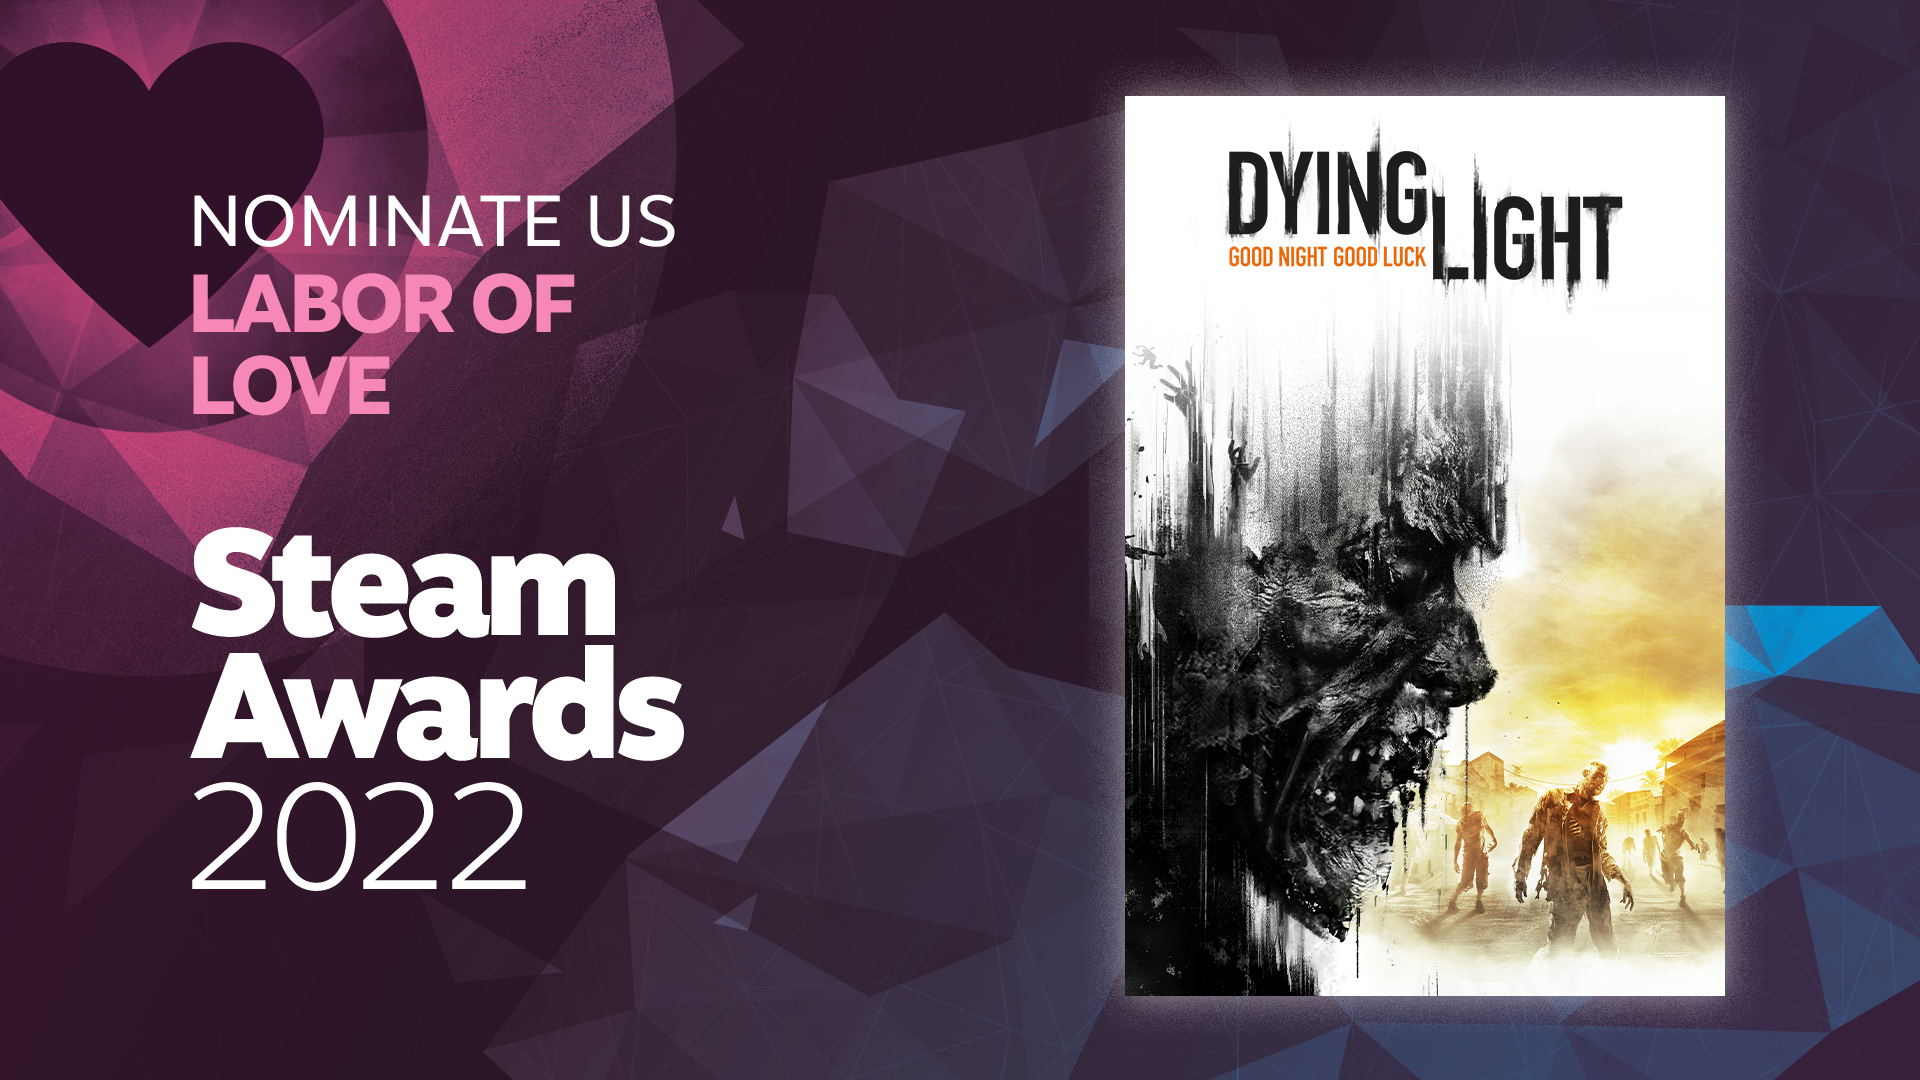 Jogo Dying Light - Edição de Aniversário - PS4, Shopping